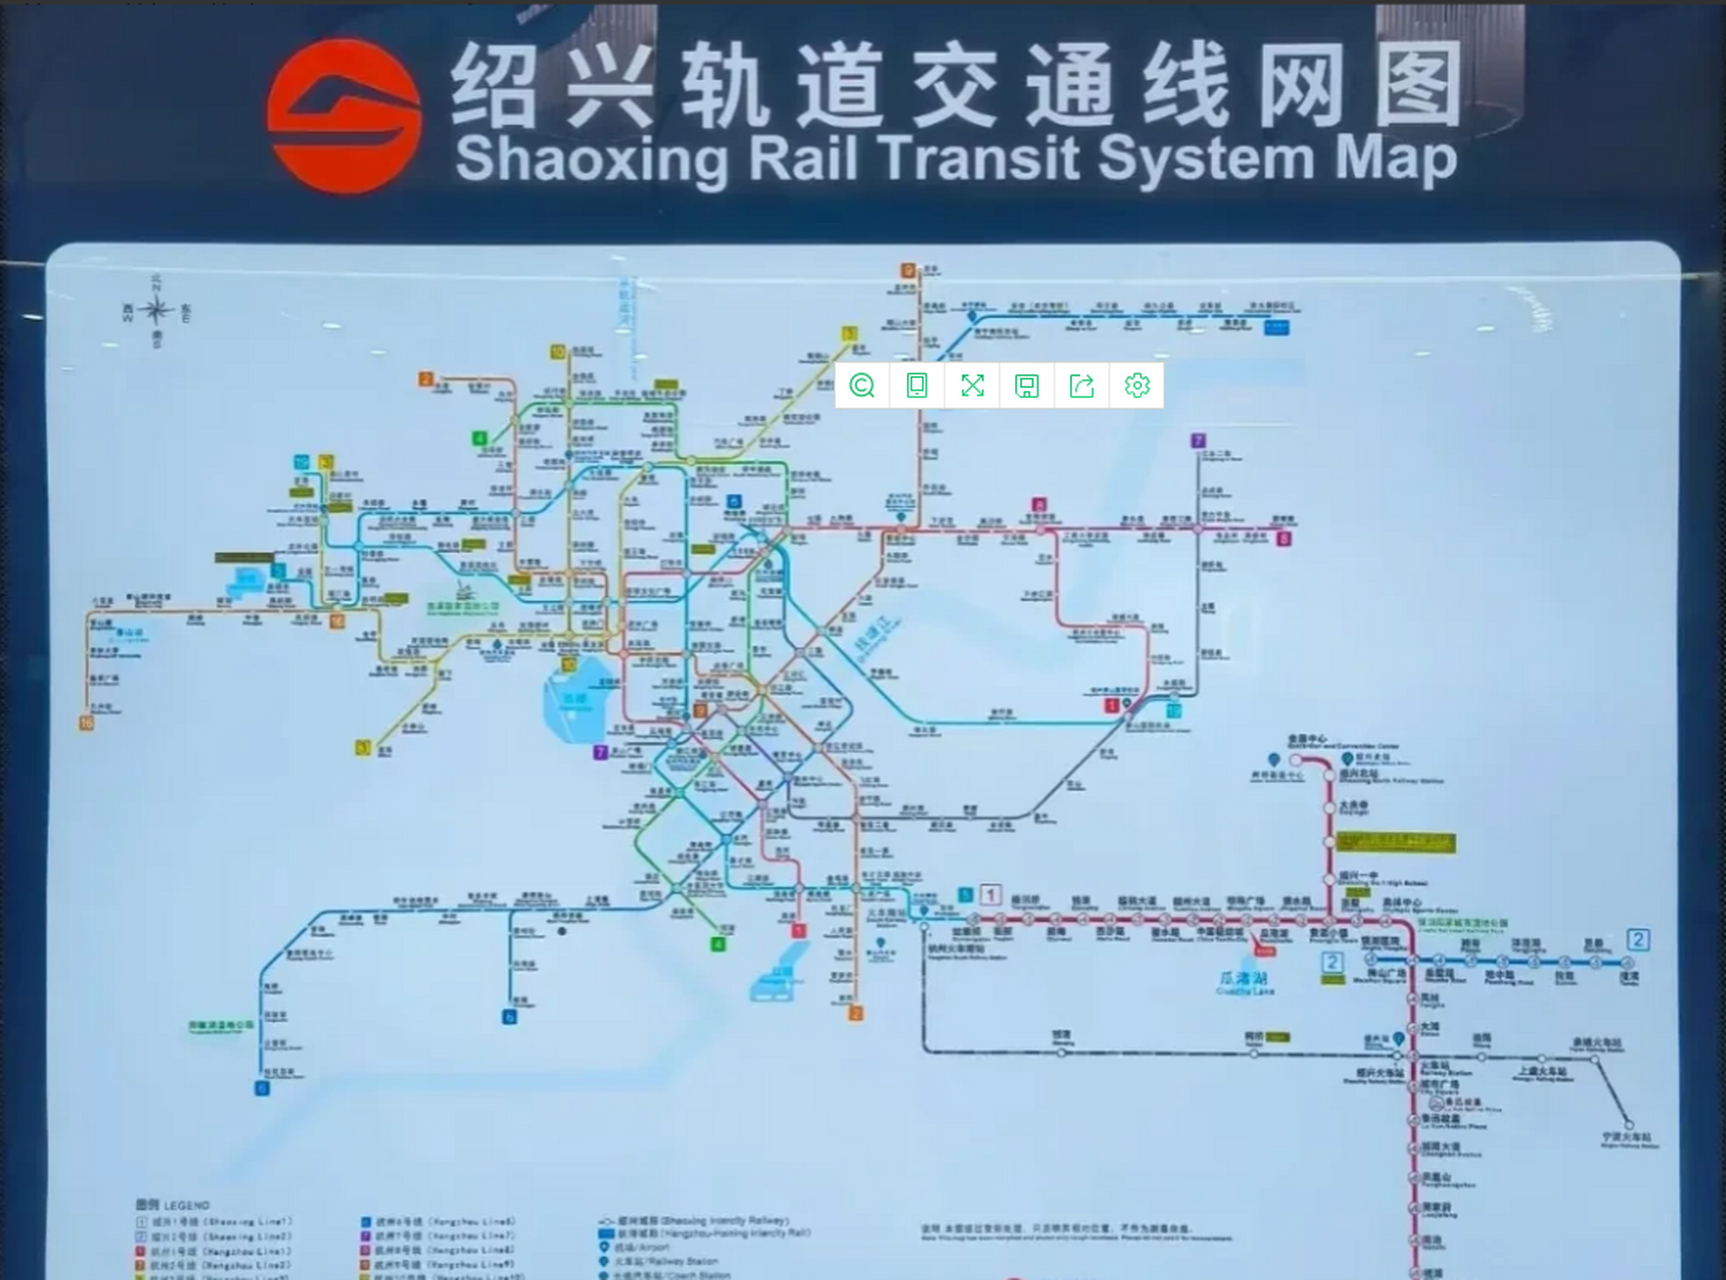 绍兴城市不大,胃口不小,远期规划的地铁线路如同蜘蛛网一样密集,杭州